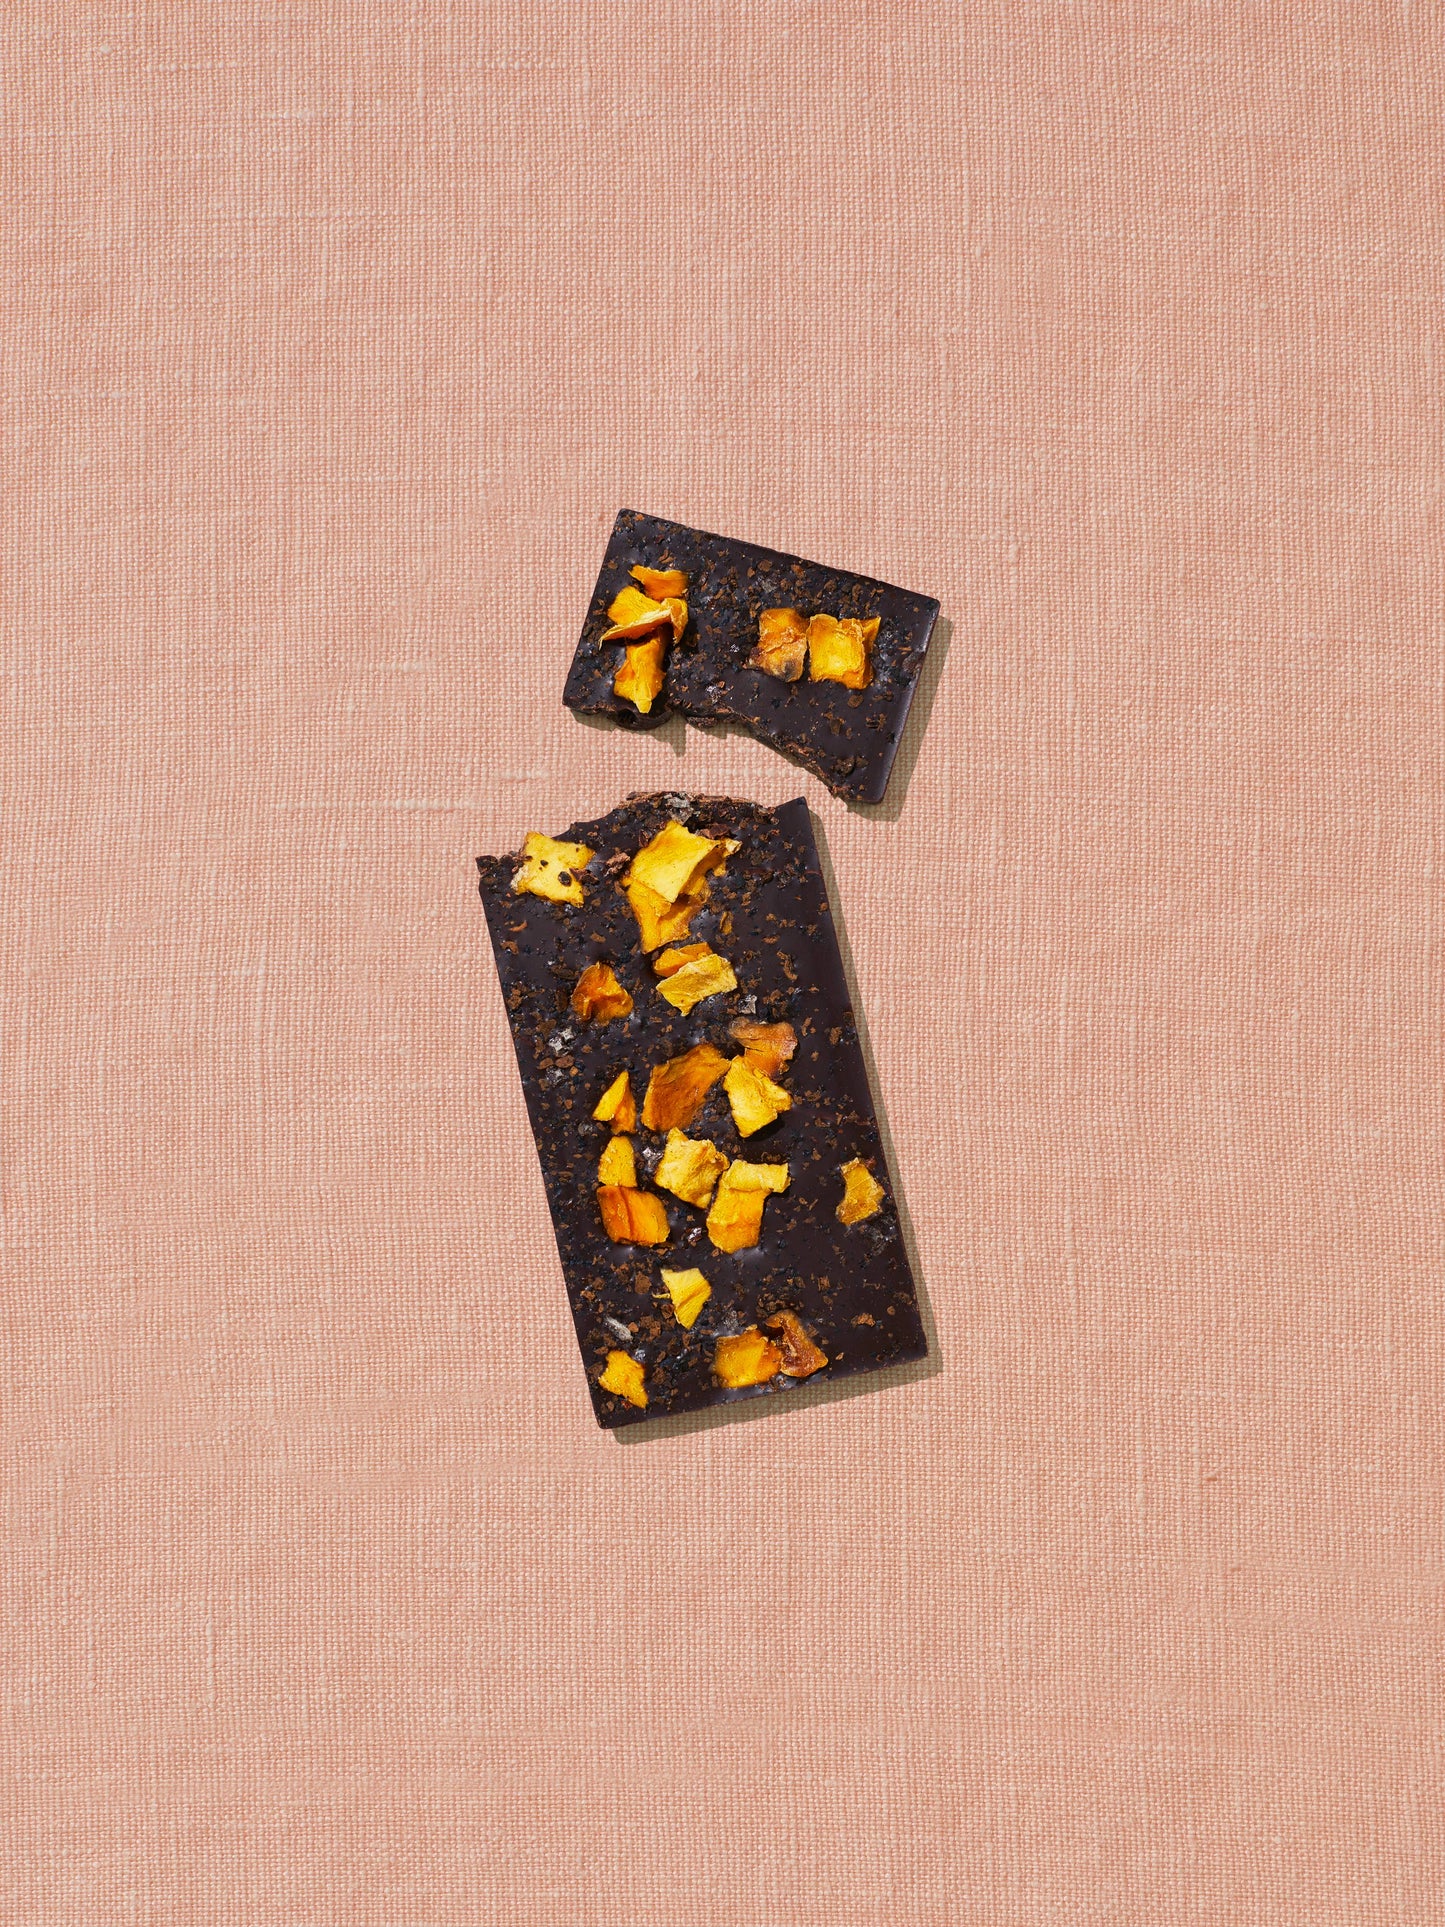 Mango Chili Date-Sweetened Dark Chocolate Mother's Day